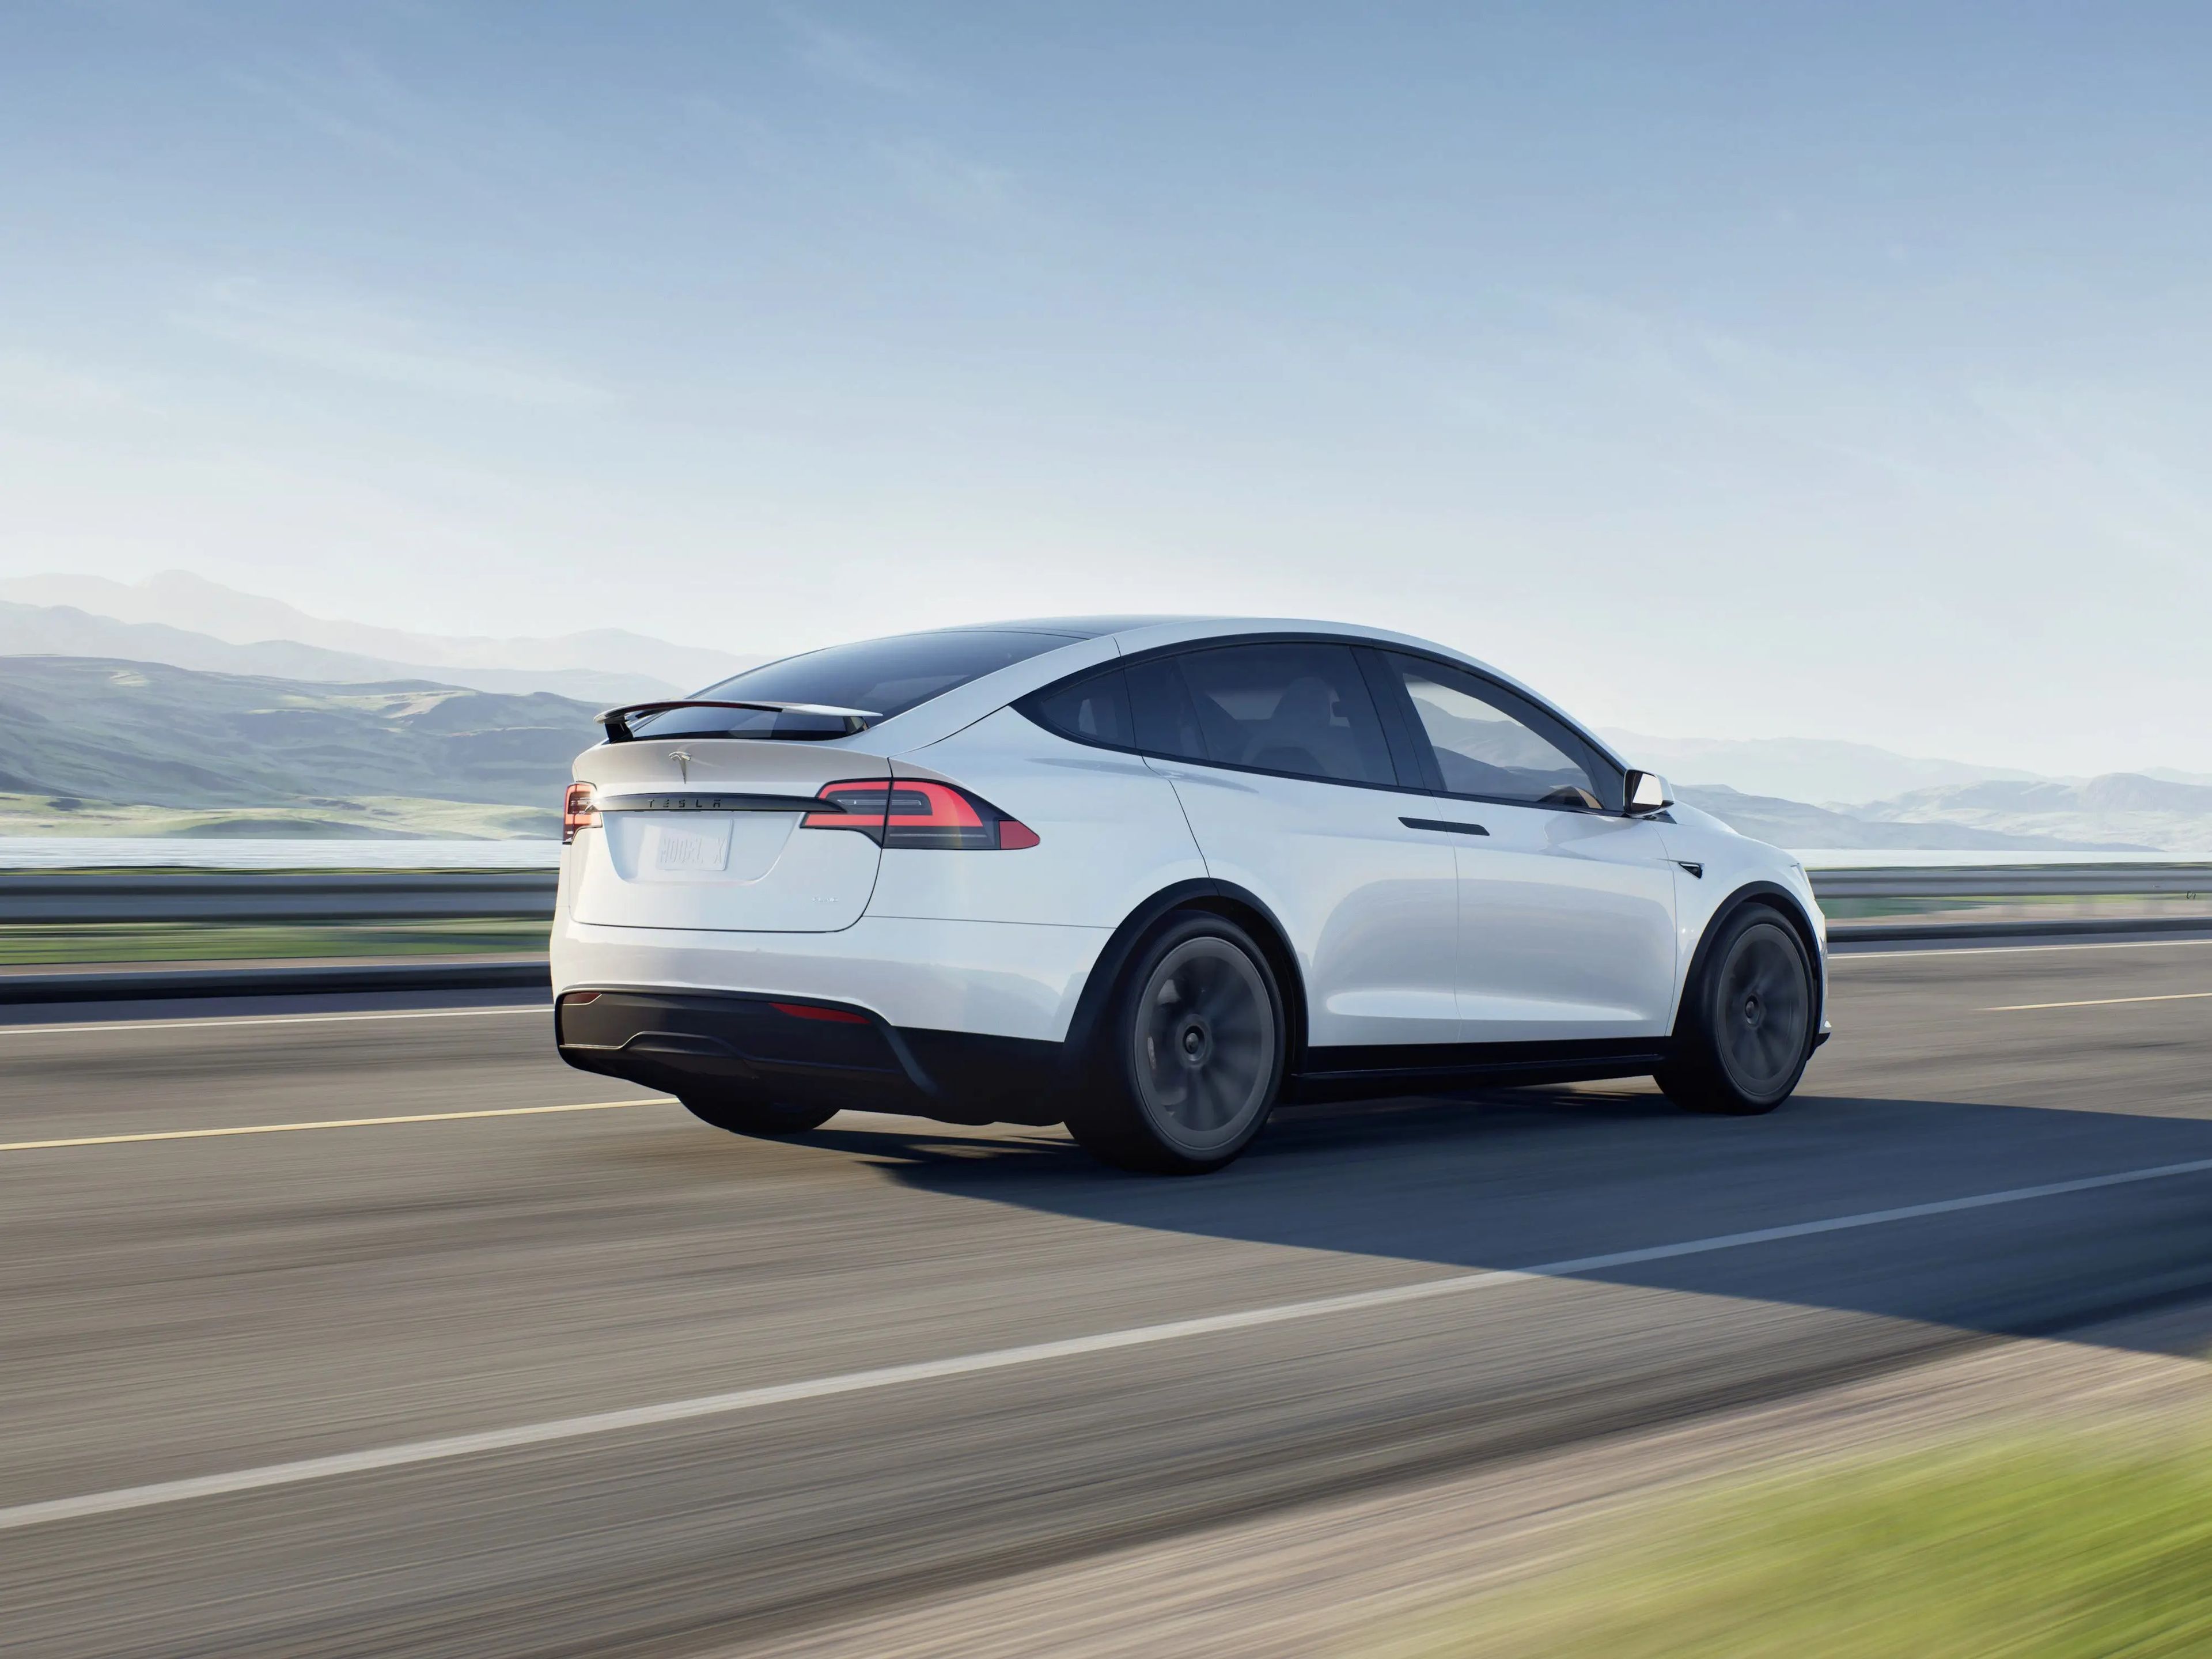 El Tesla Model X es uno de los coches eléctricos de mayor autonomía del mercado.